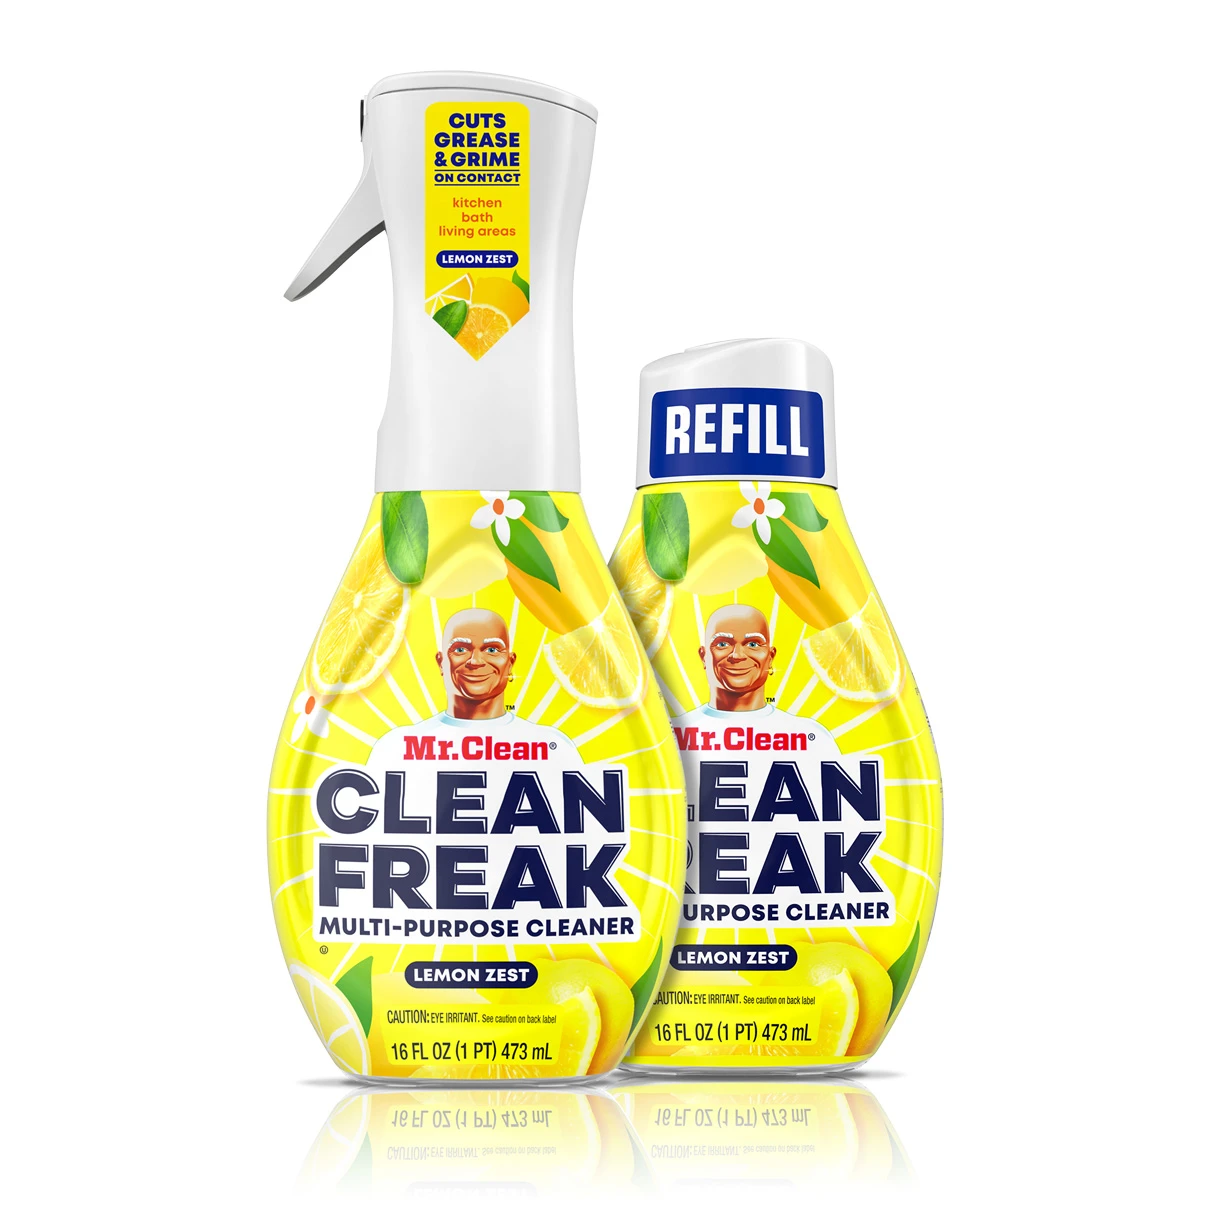 Clean-Freak-Gain-1210x1210